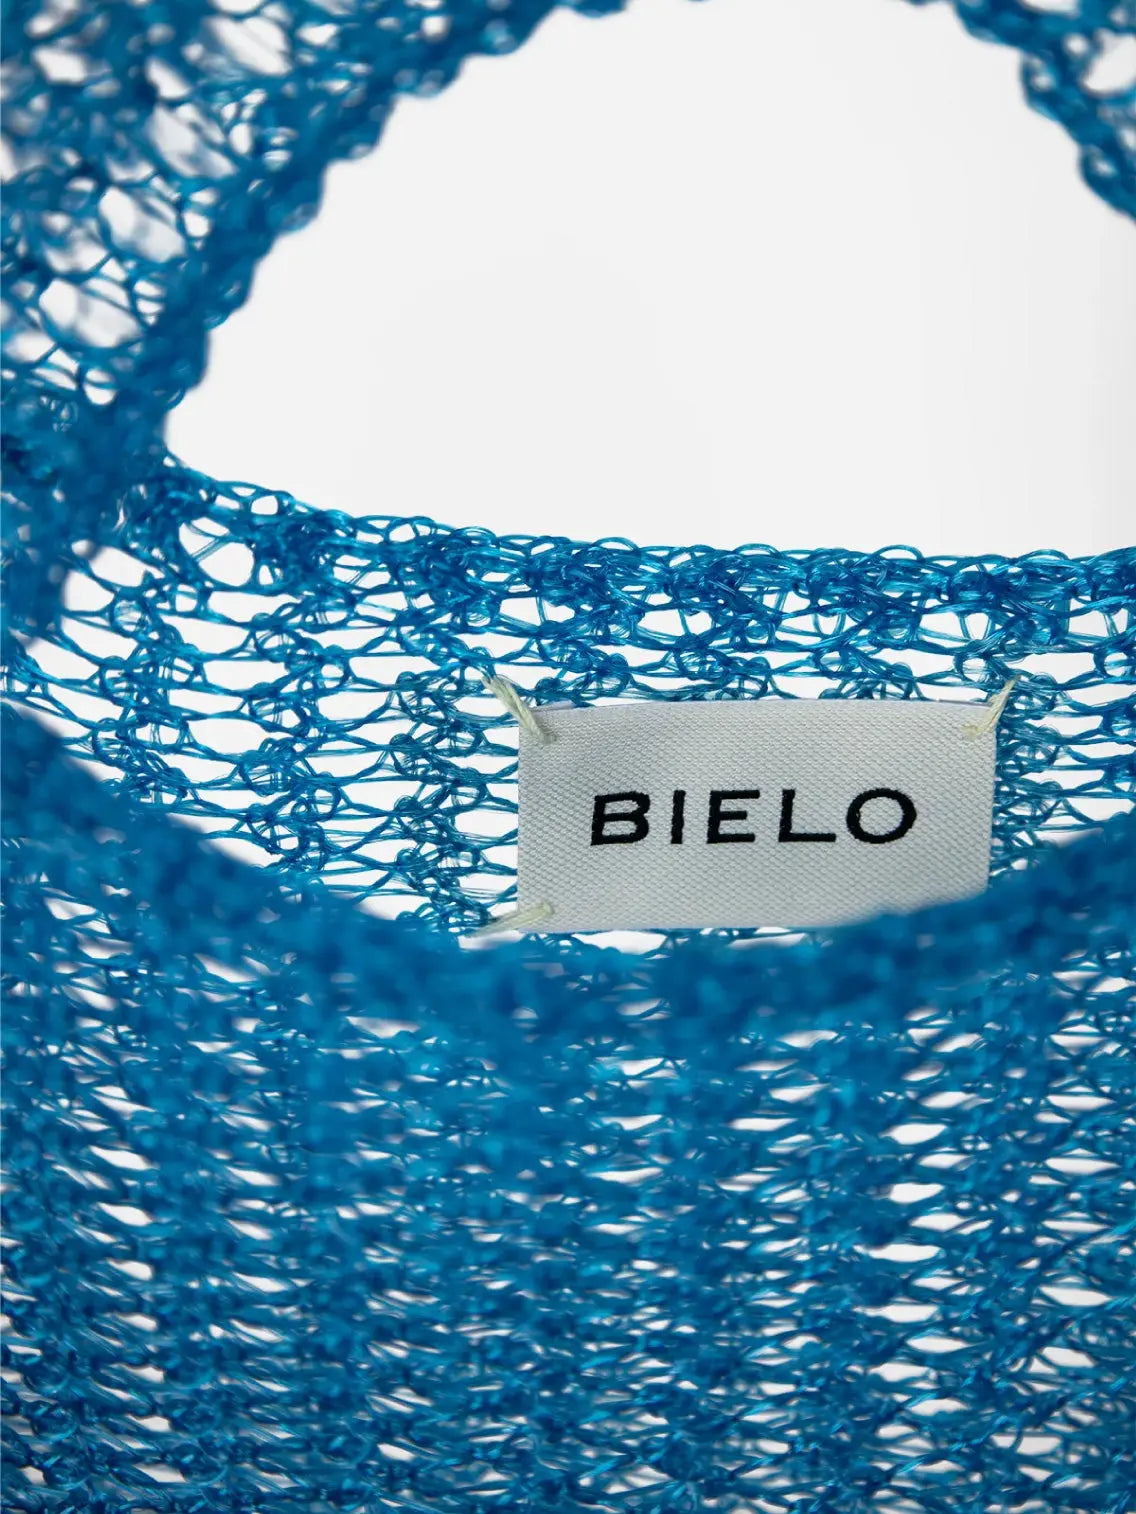 Blue Mesh Bag Bielo